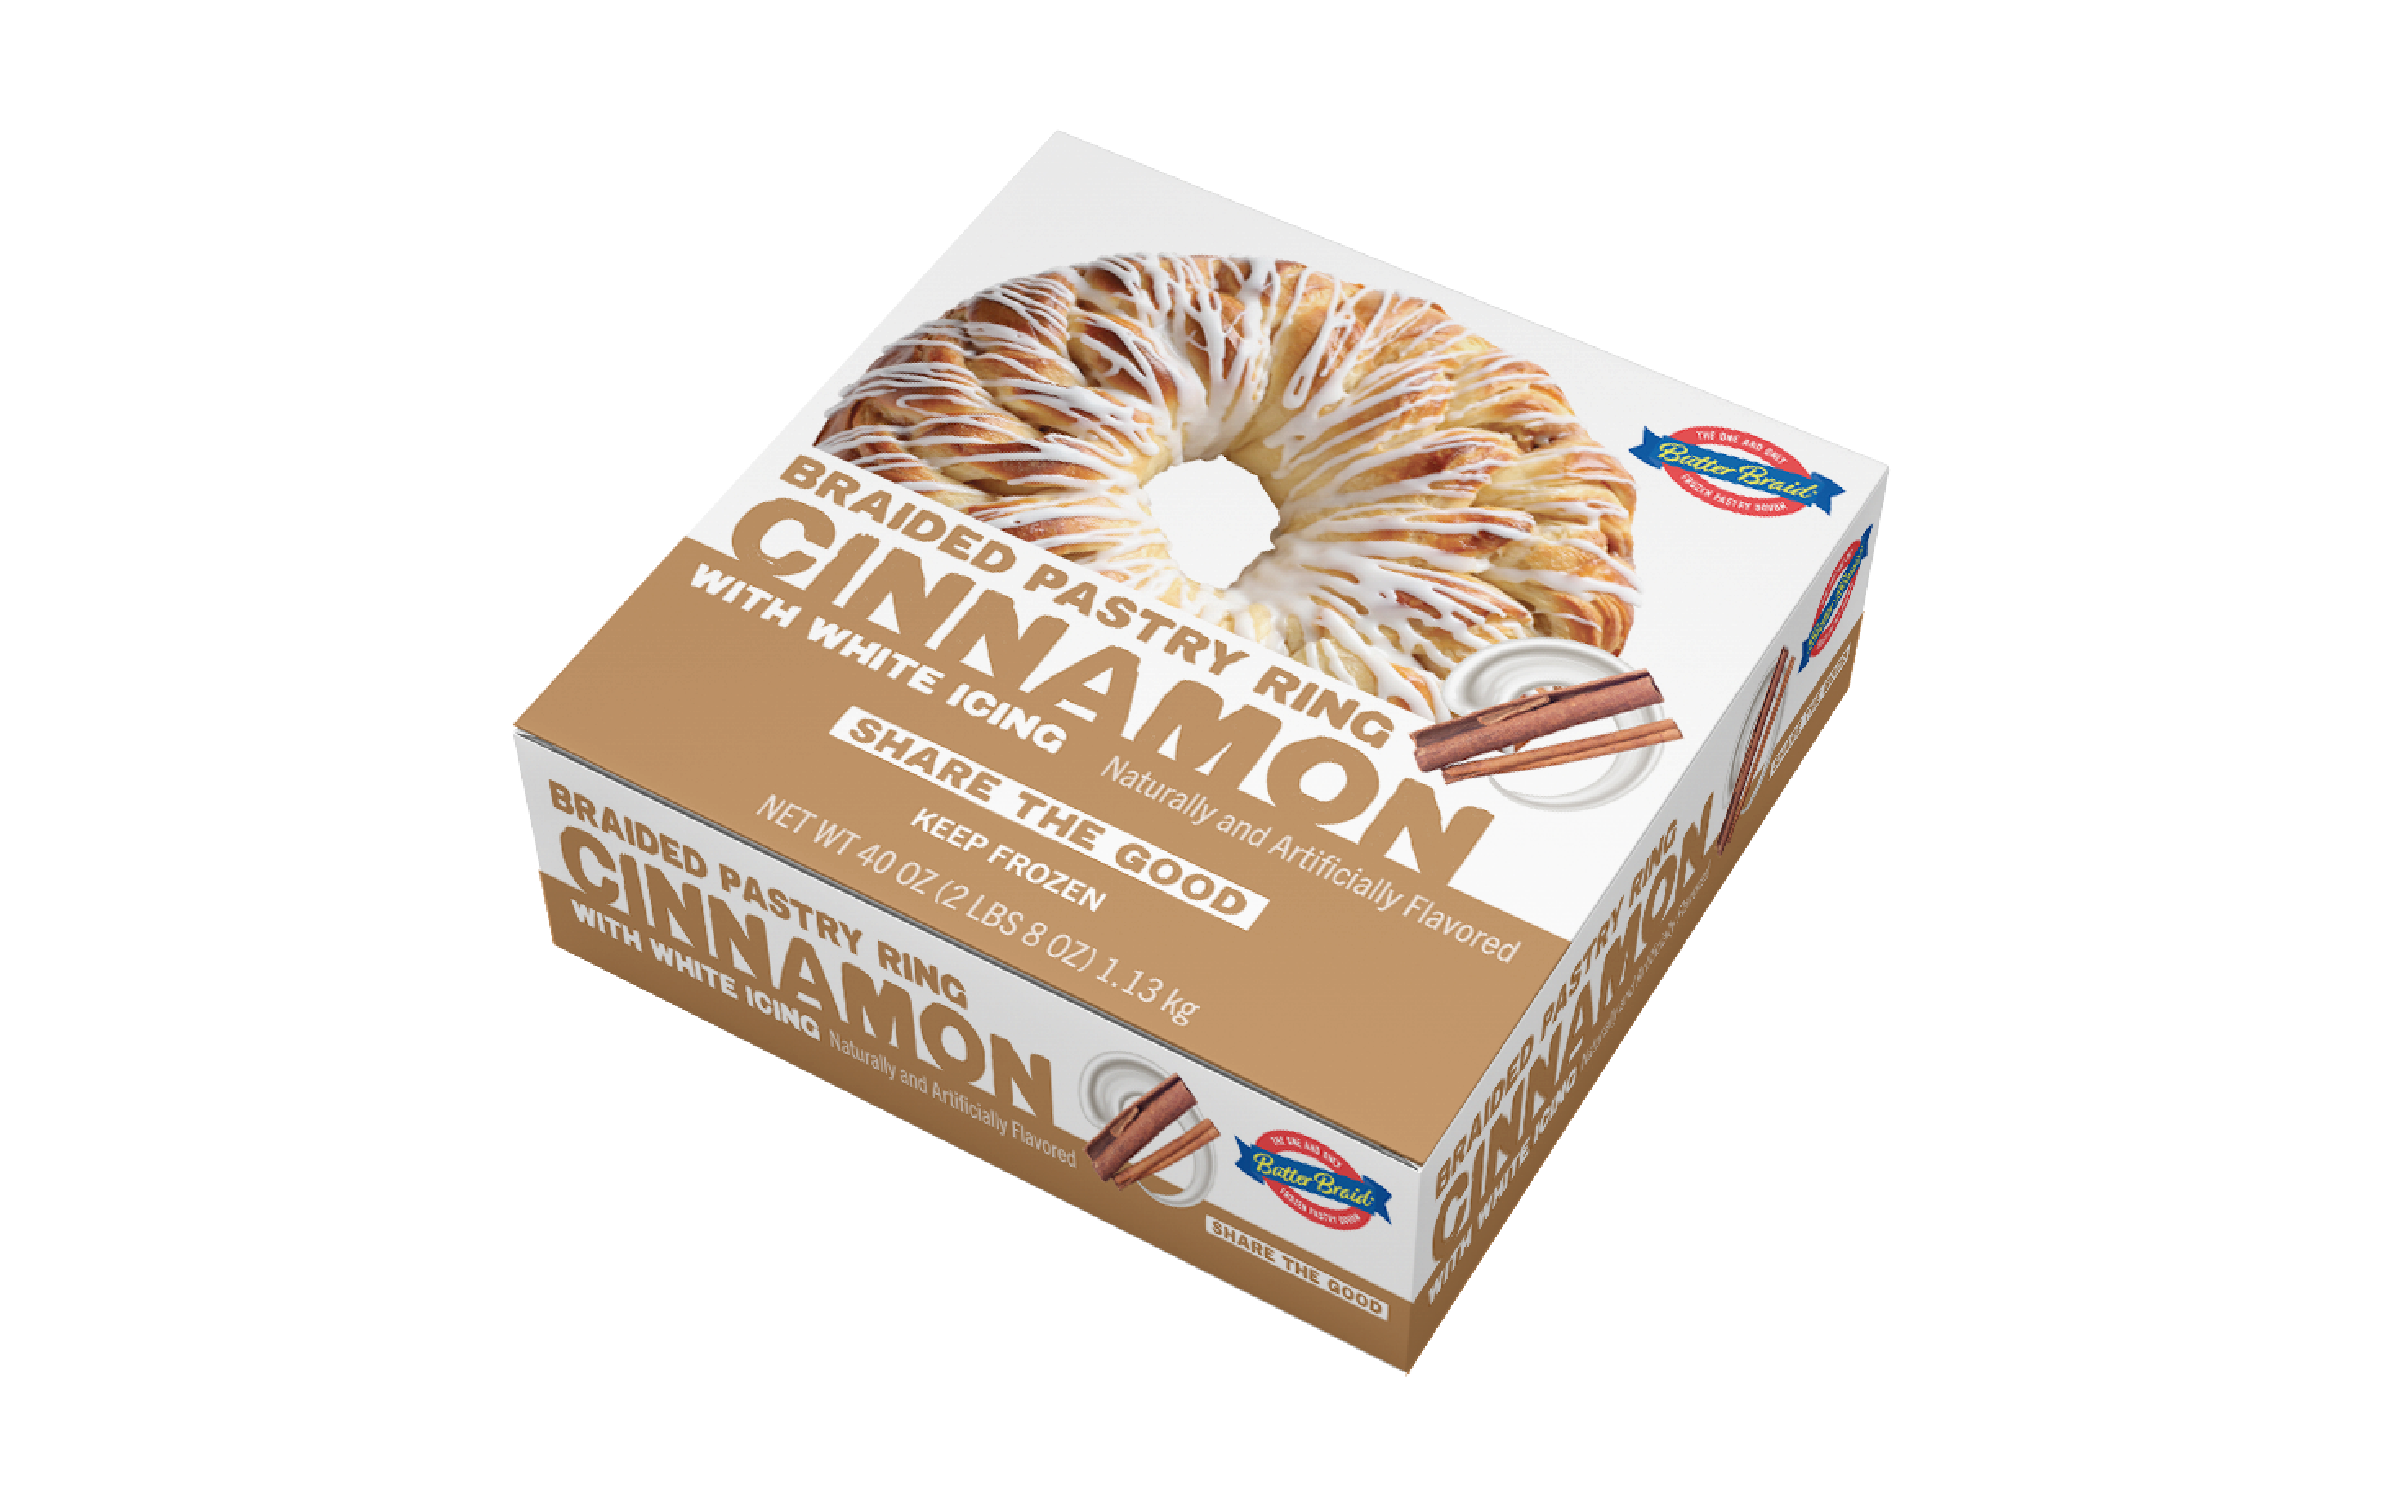 Cinnamon Braided Pastry Ring carton